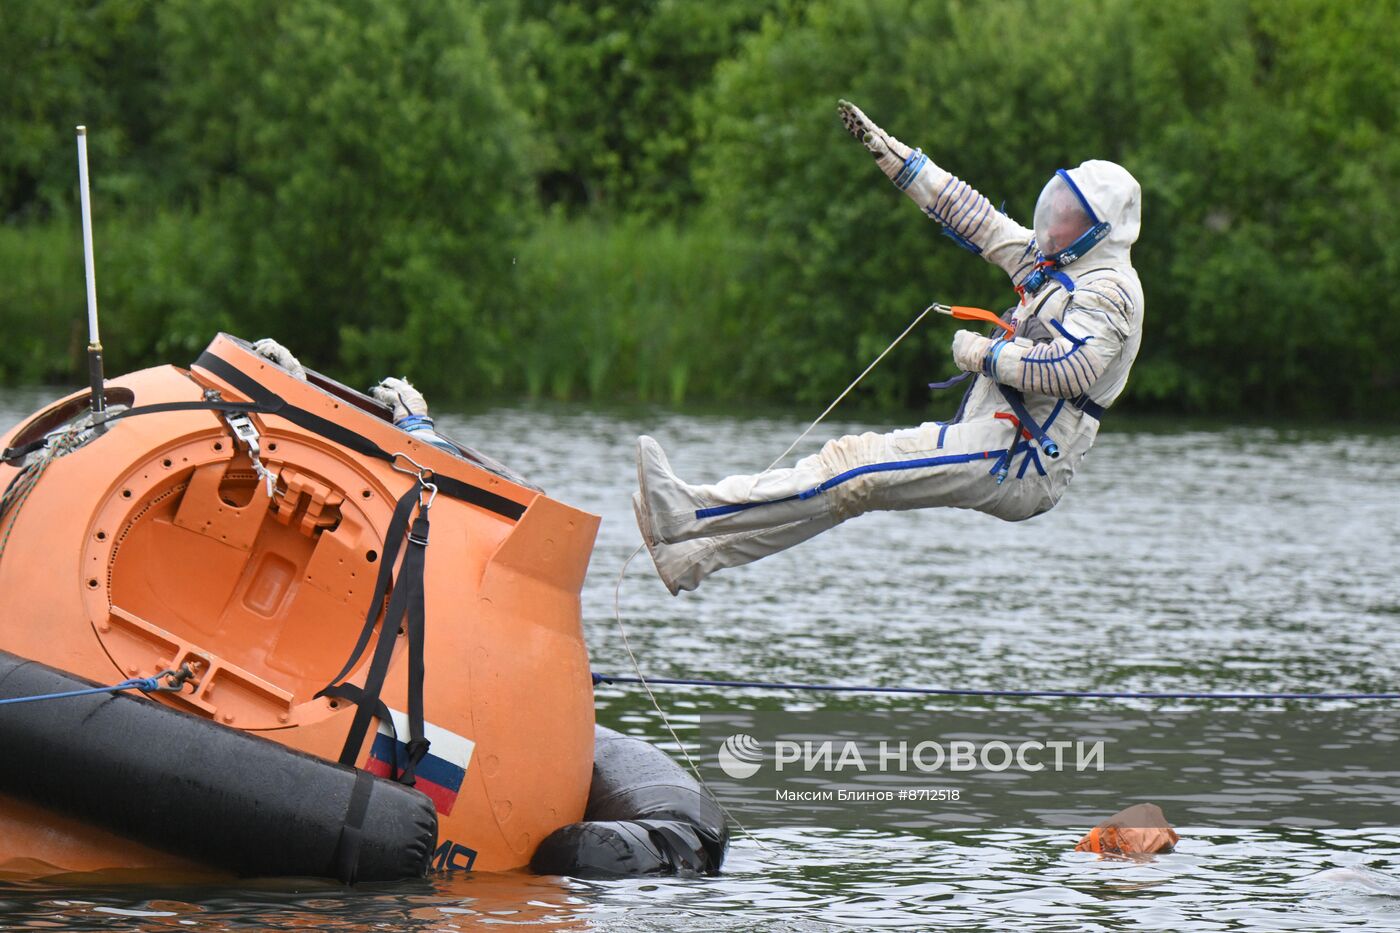 Тренировки космонавтов в случае приземления на водную поверхность